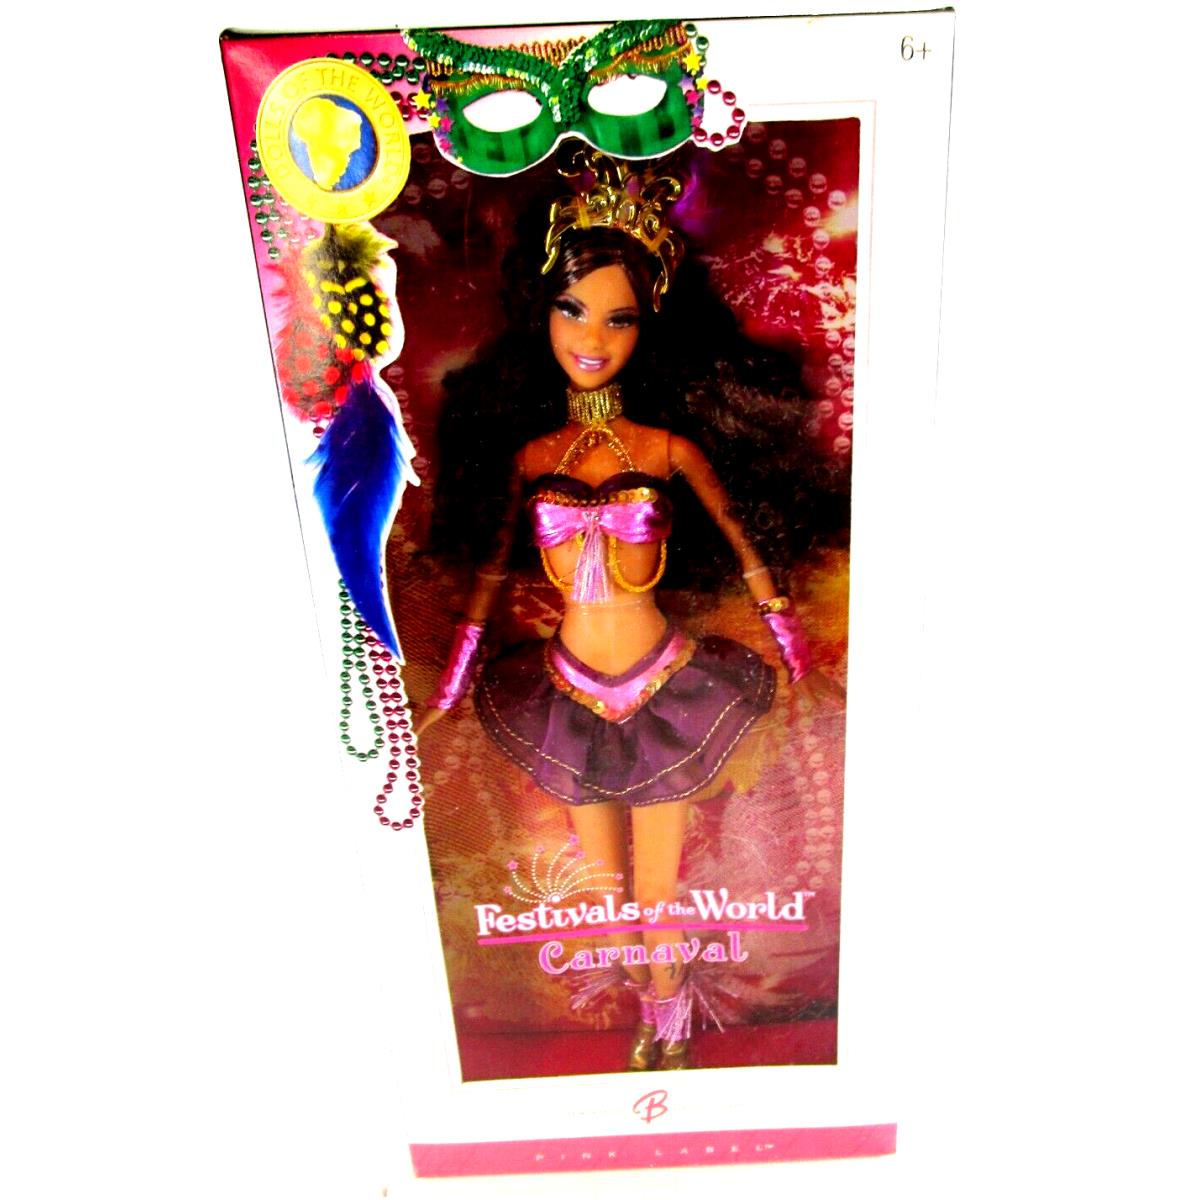 Mattel Festivals of The World Carnaval Barbie Doll 2005 Pink Label J0927